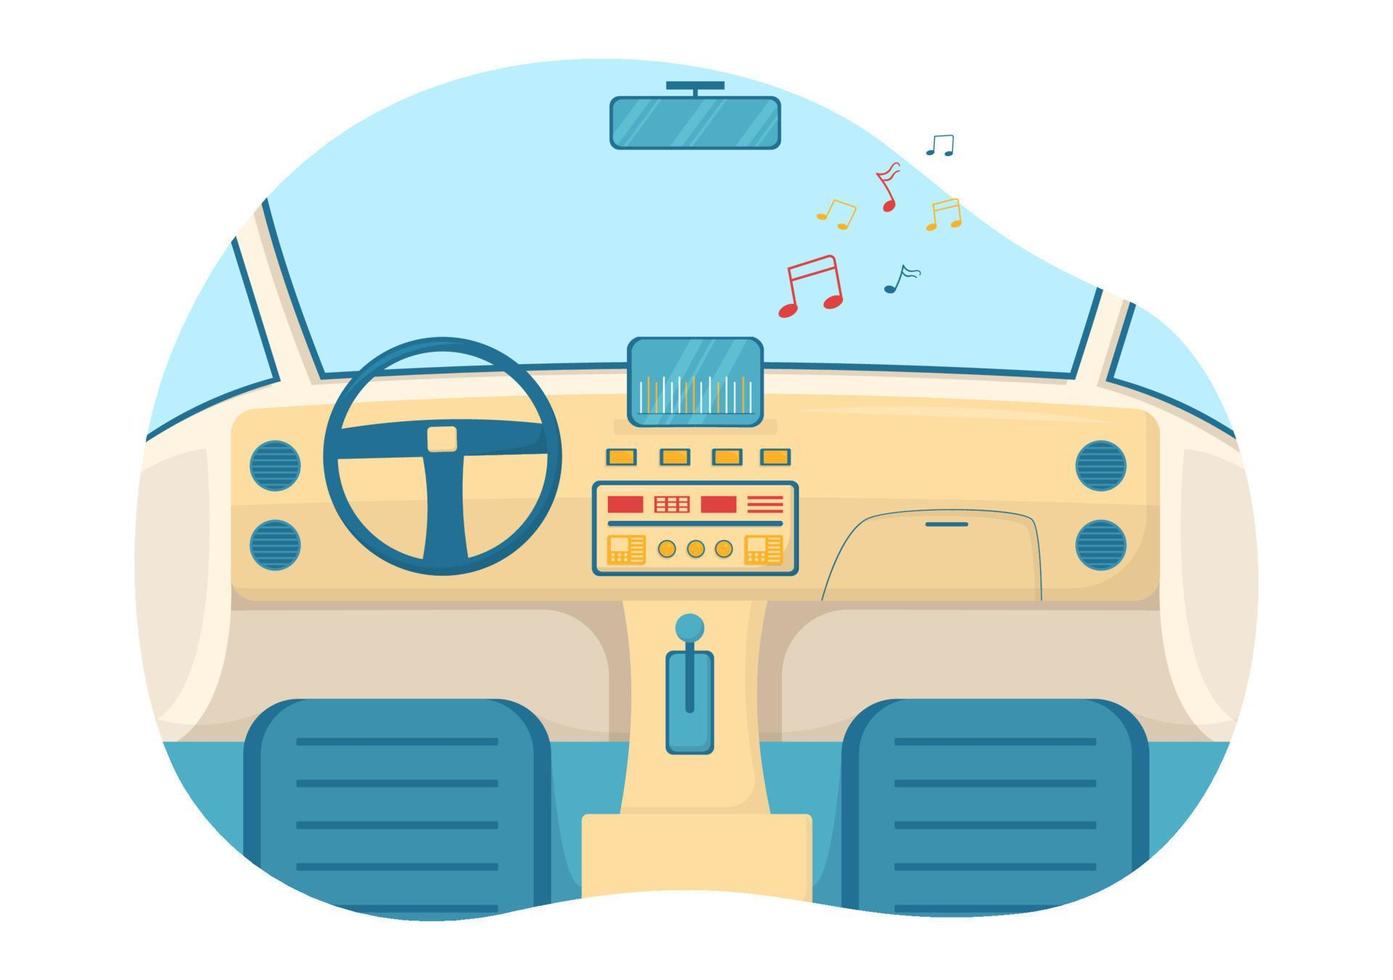 audio de voiture avec haut-parleurs, système audio ou automobile musicale dans une affiche de dessin animé plat illustration de modèles dessinés à la main vecteur